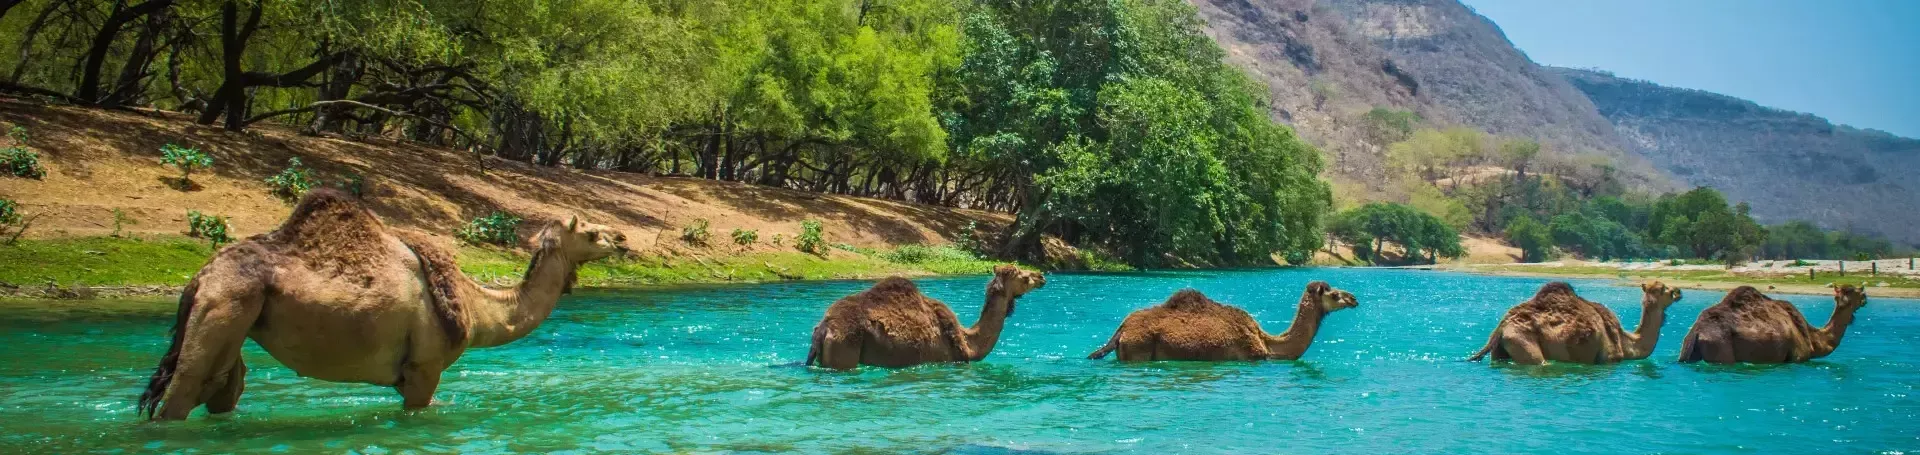 Kamelen_in_water